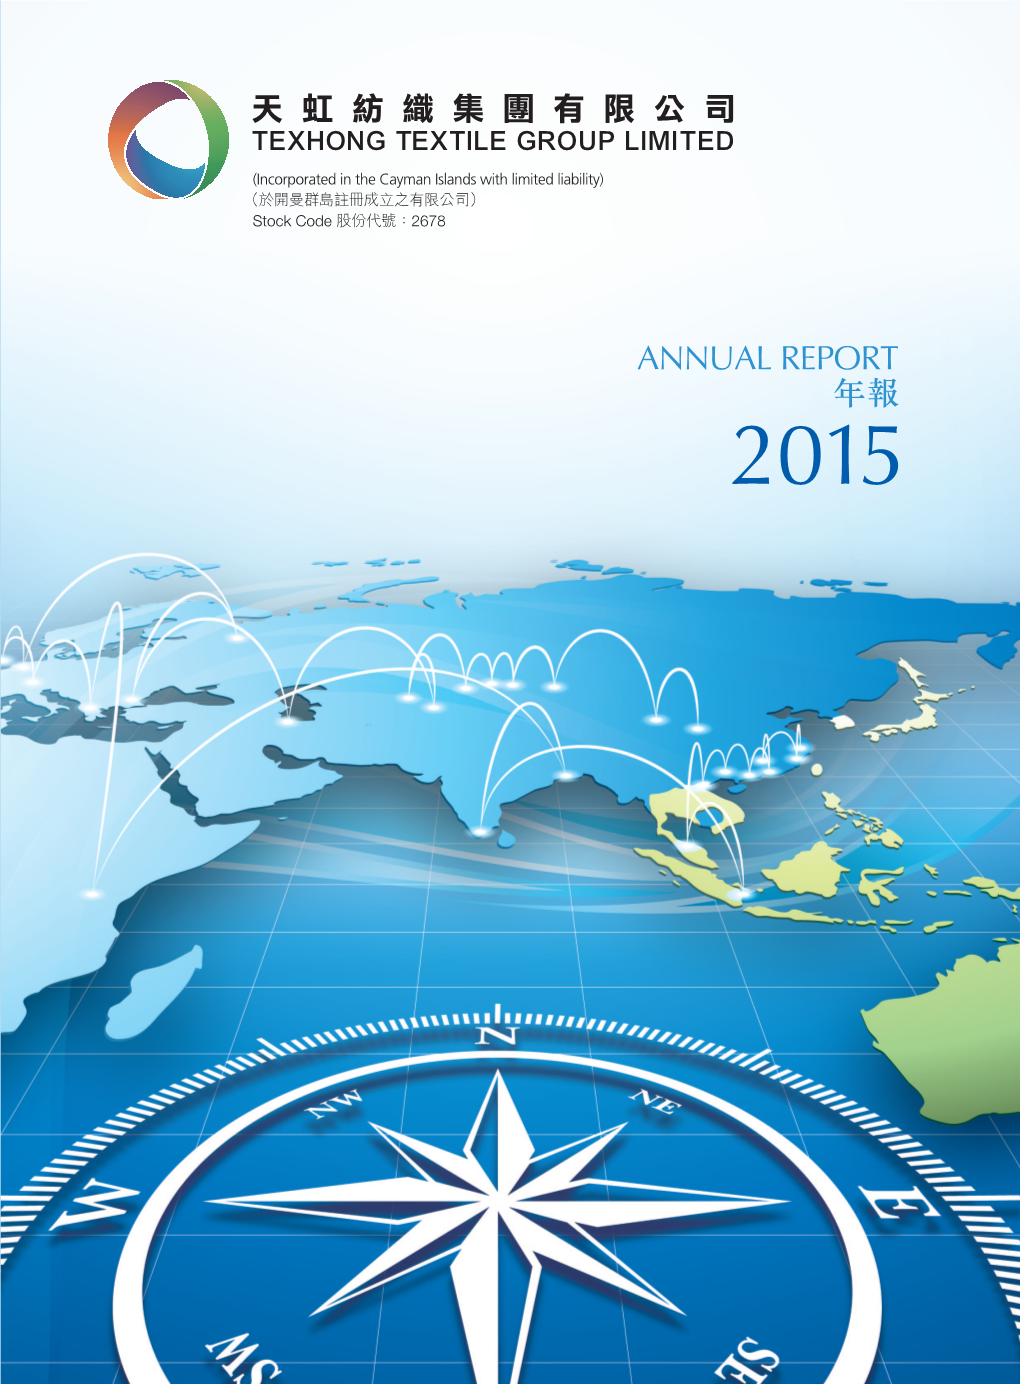 Annual Report 年報 2015 Annual Report 年報 2015